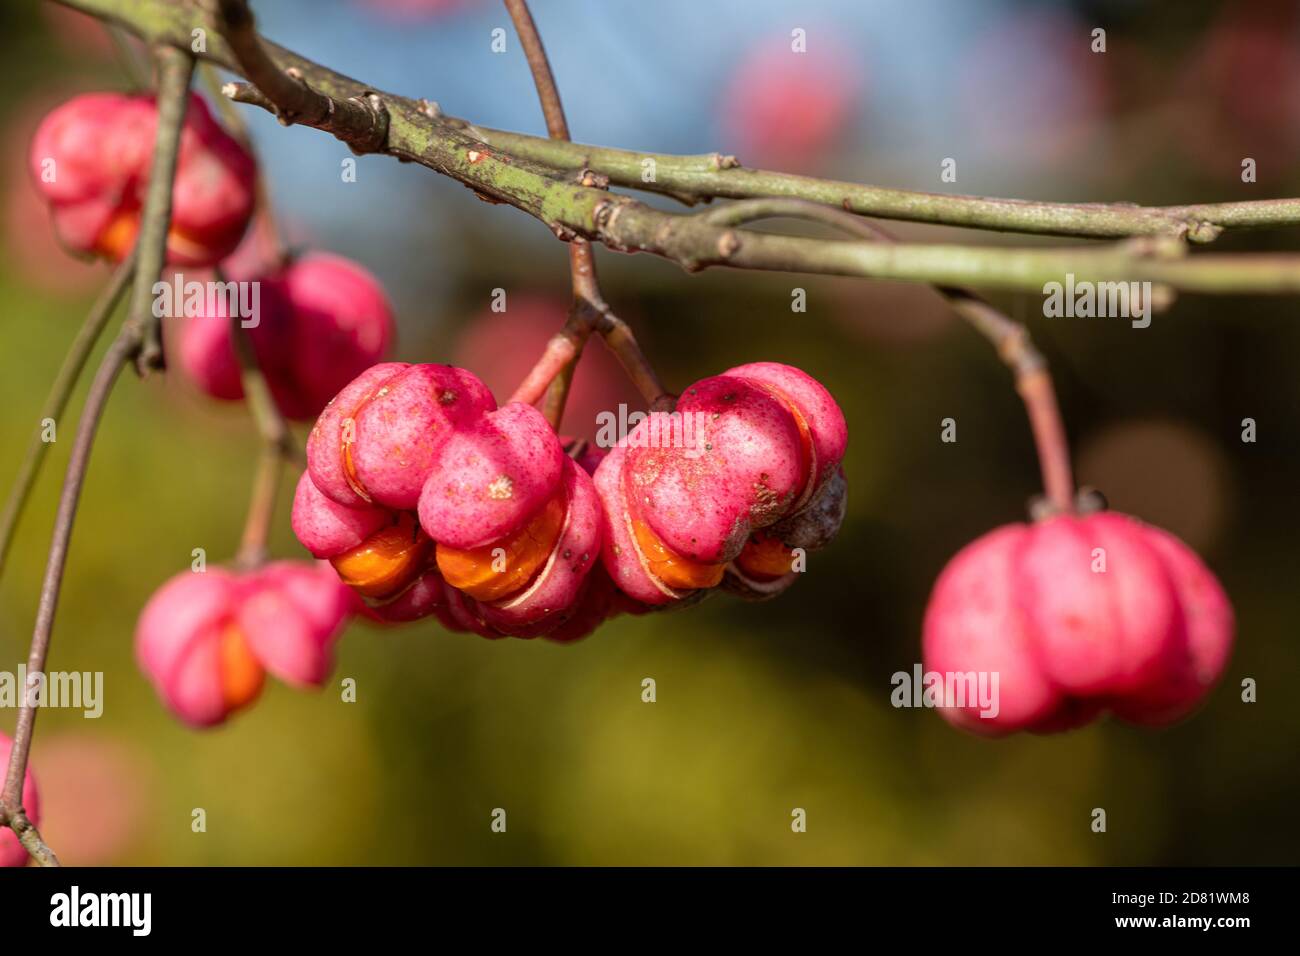 Primer plano de las bayas del huso de colores brillantes, frutos rosas y naranjas del árbol del huso (Euonymus europaeus) Foto de stock